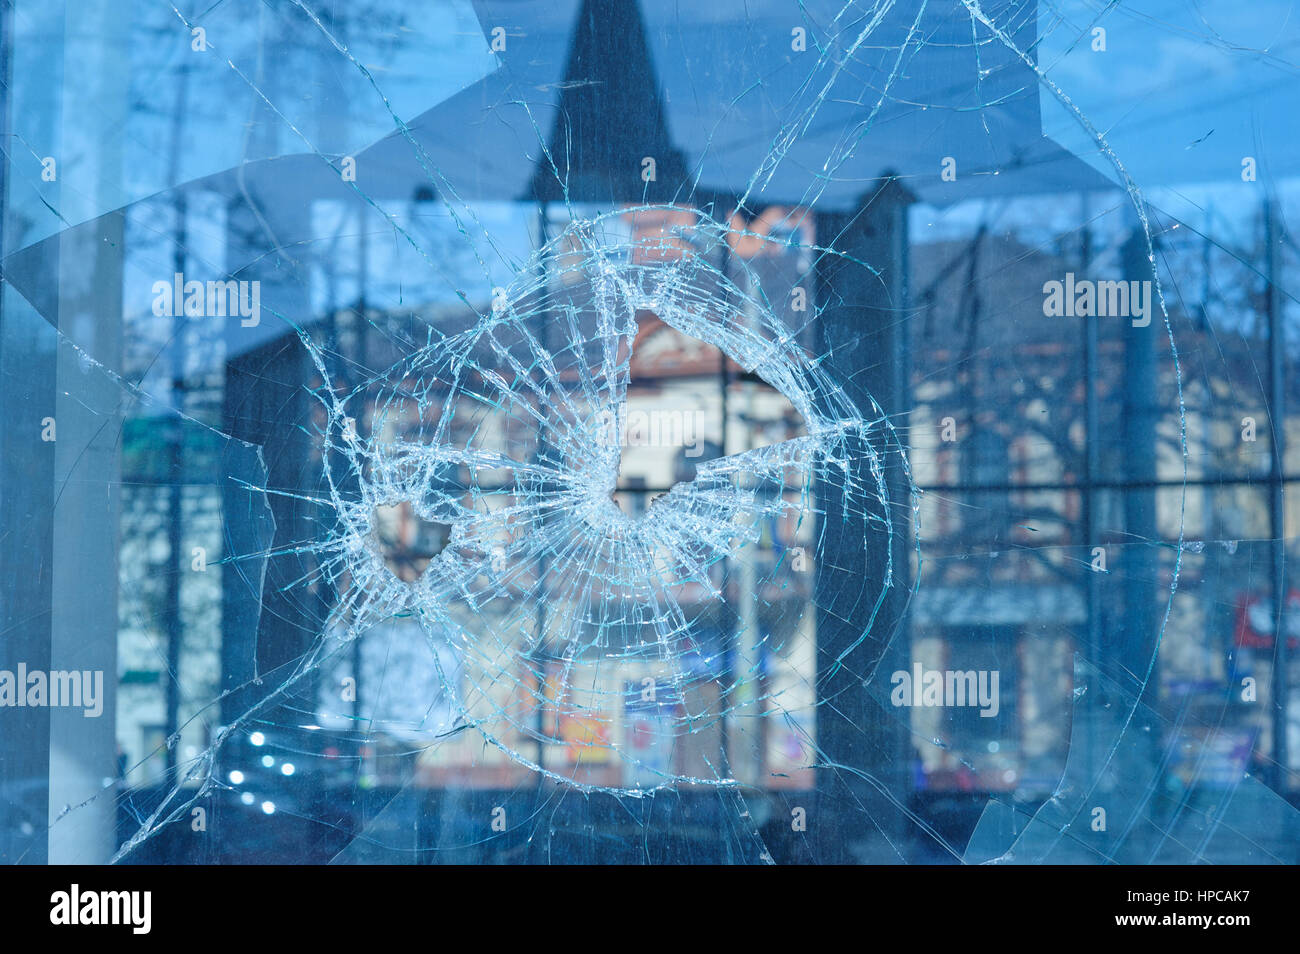 Bullets percé dans la fenêtre en verre Banque D'Images